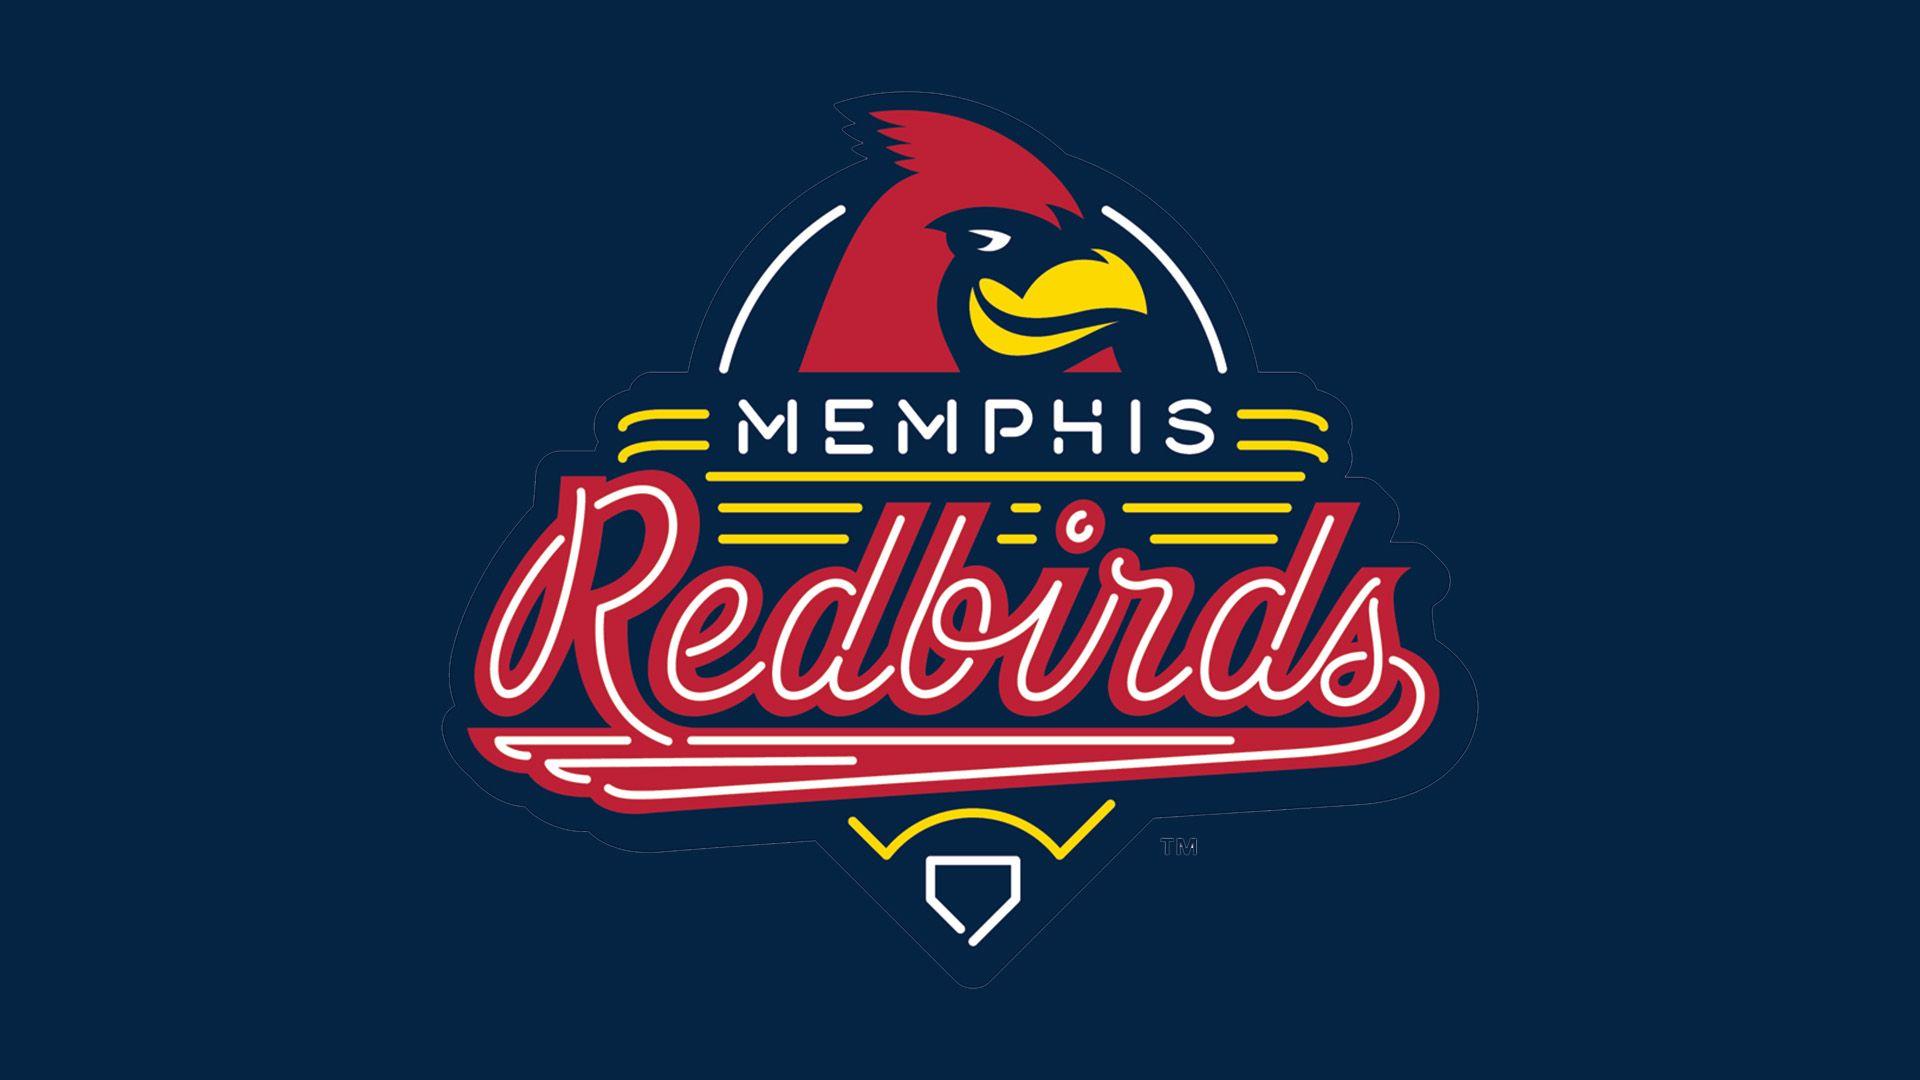 Red Birds of All Logo - Memphis Redbirds logo, Memphis Redbirds Symbol, Meaning, History